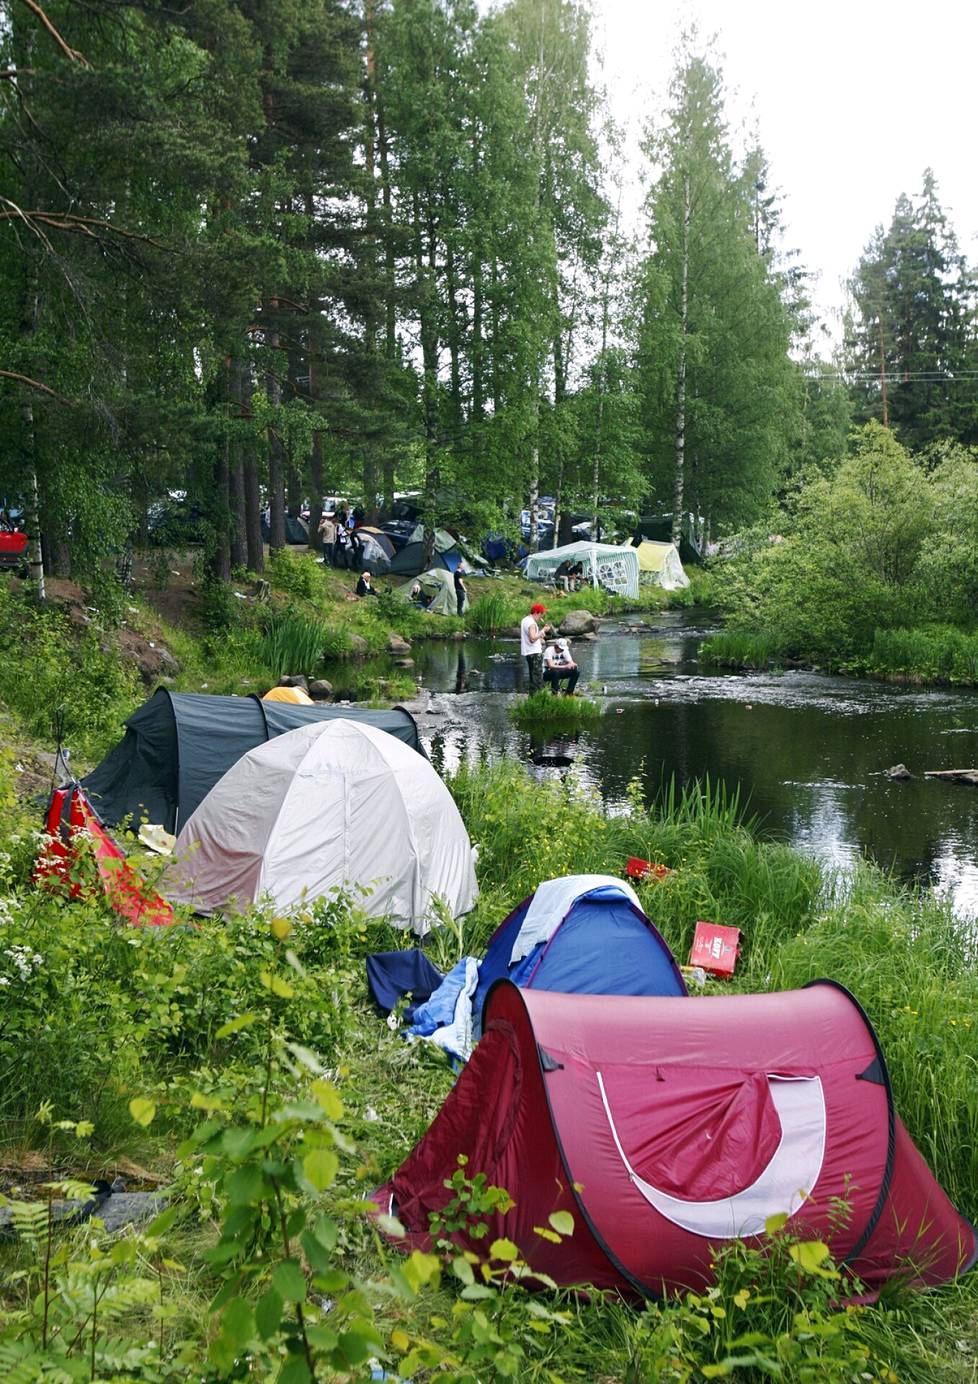 Teltta-alue oli niin täynnä Provinssissa 2008, että ihmiset pystyttivät telttojaan jokivarren pusikkoon.